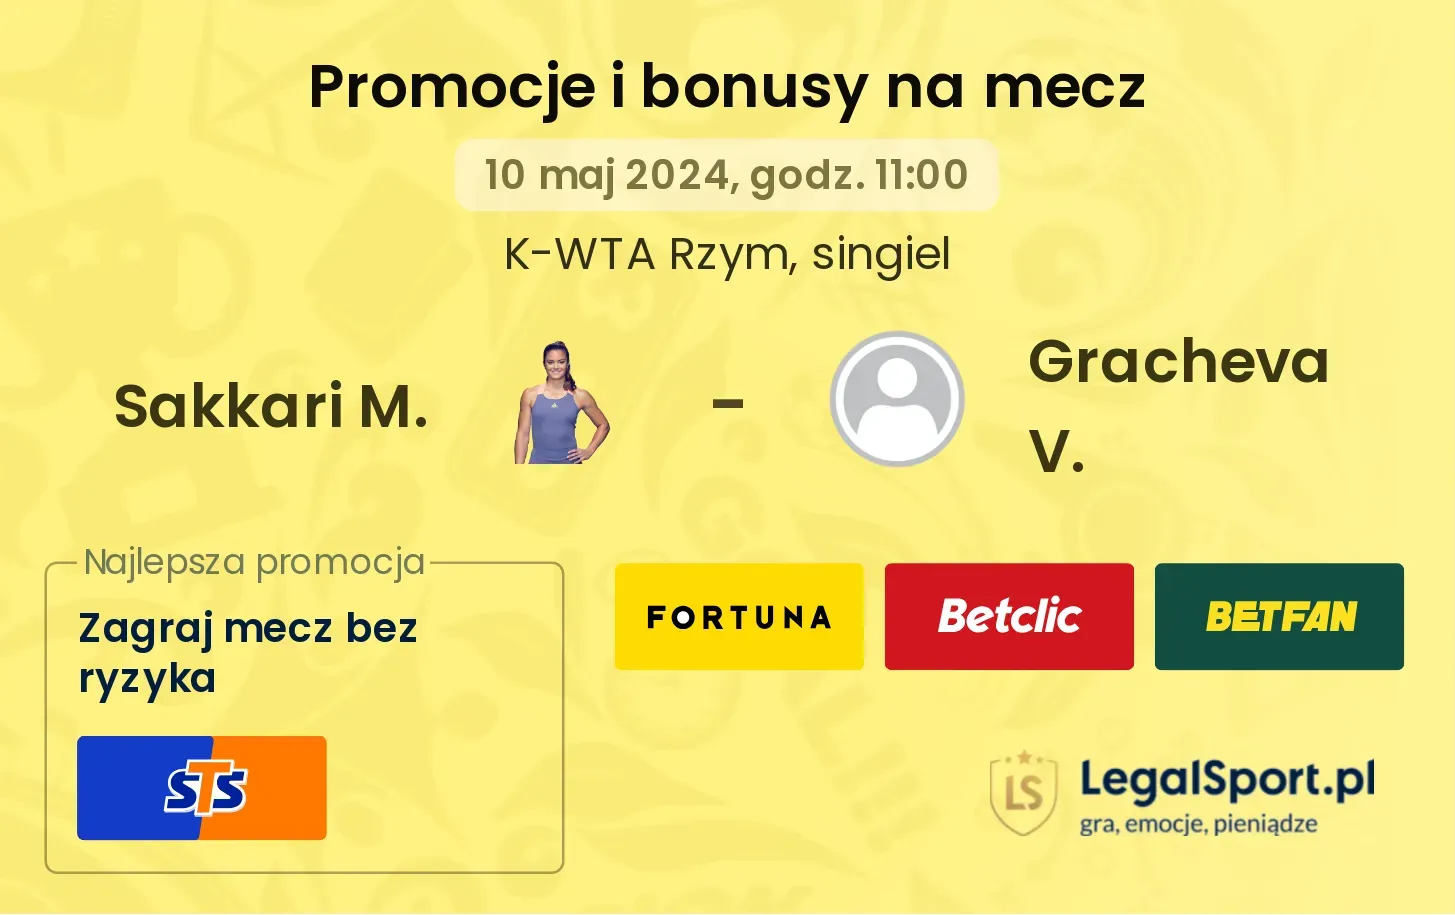 Sakkari M. - Gracheva V. promocje bonusy na mecz